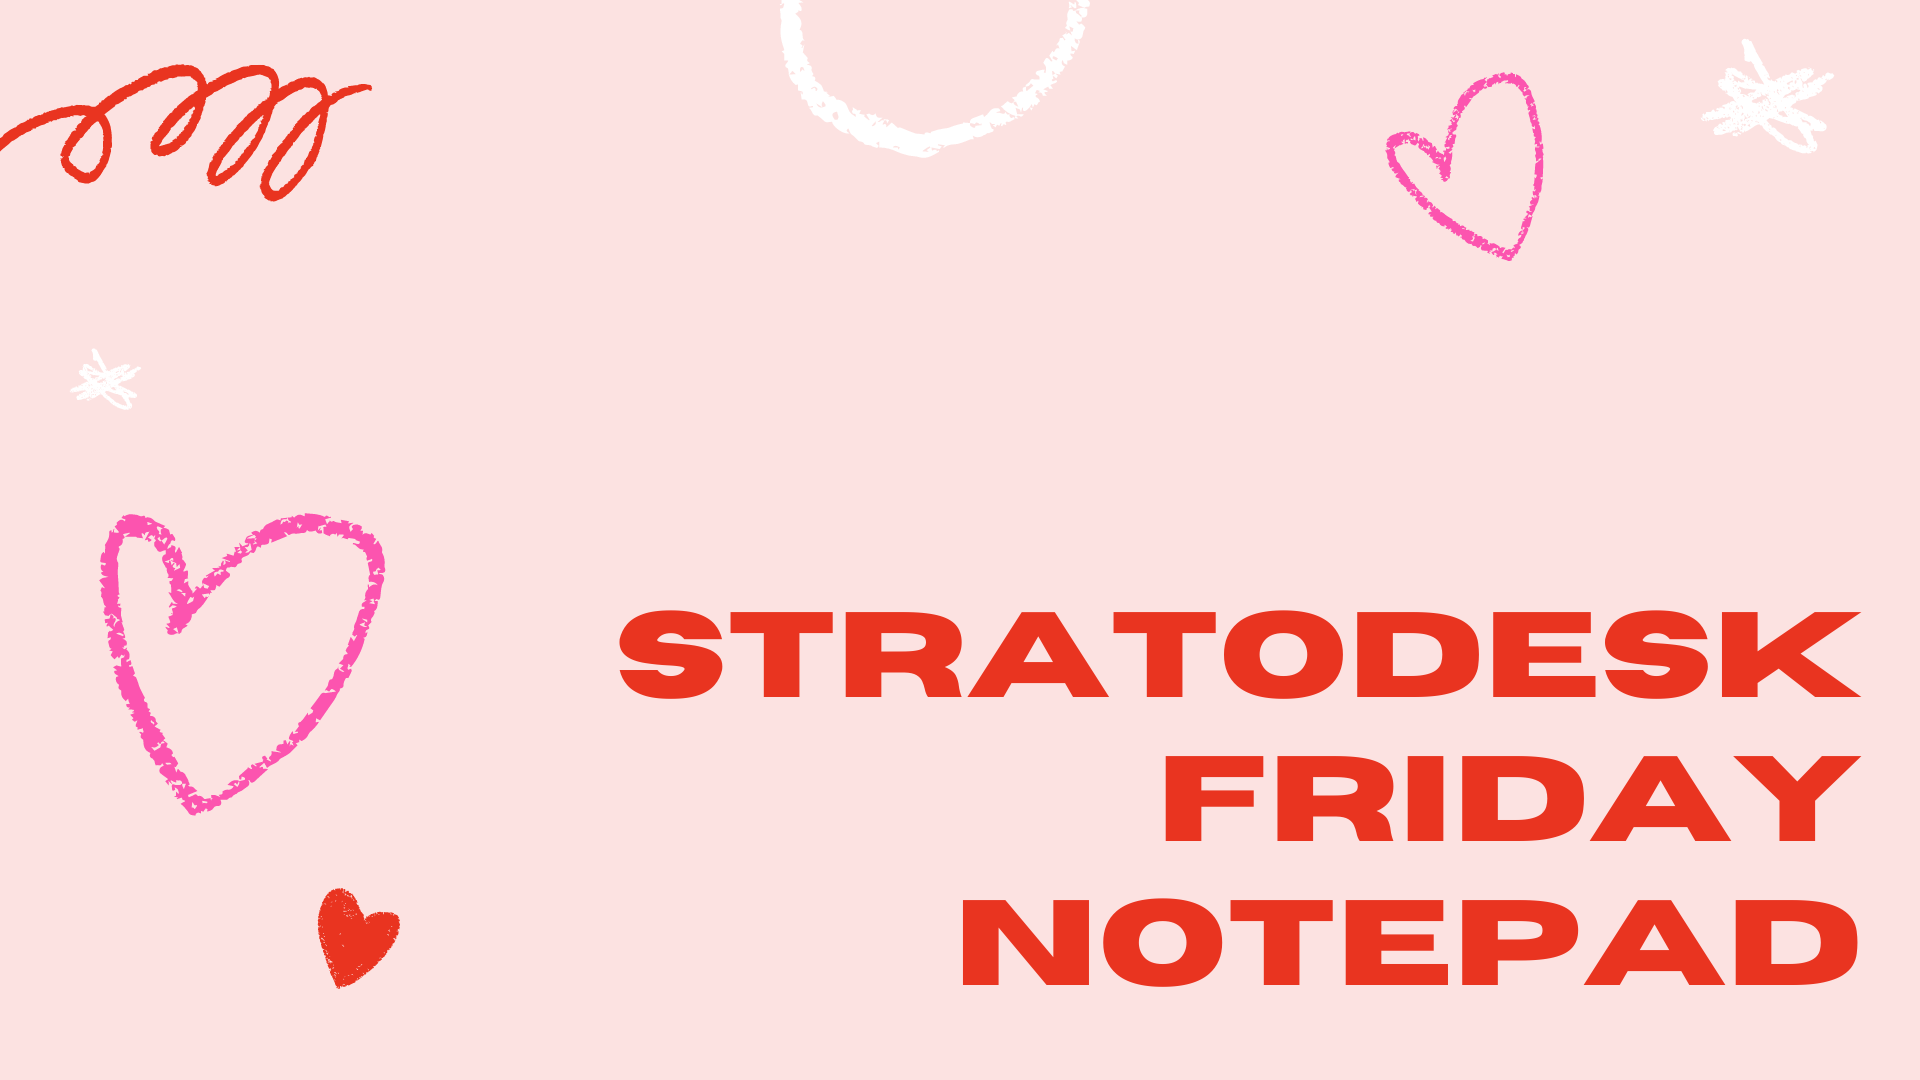 Stratodesk Friday Notepad Valentine's Day